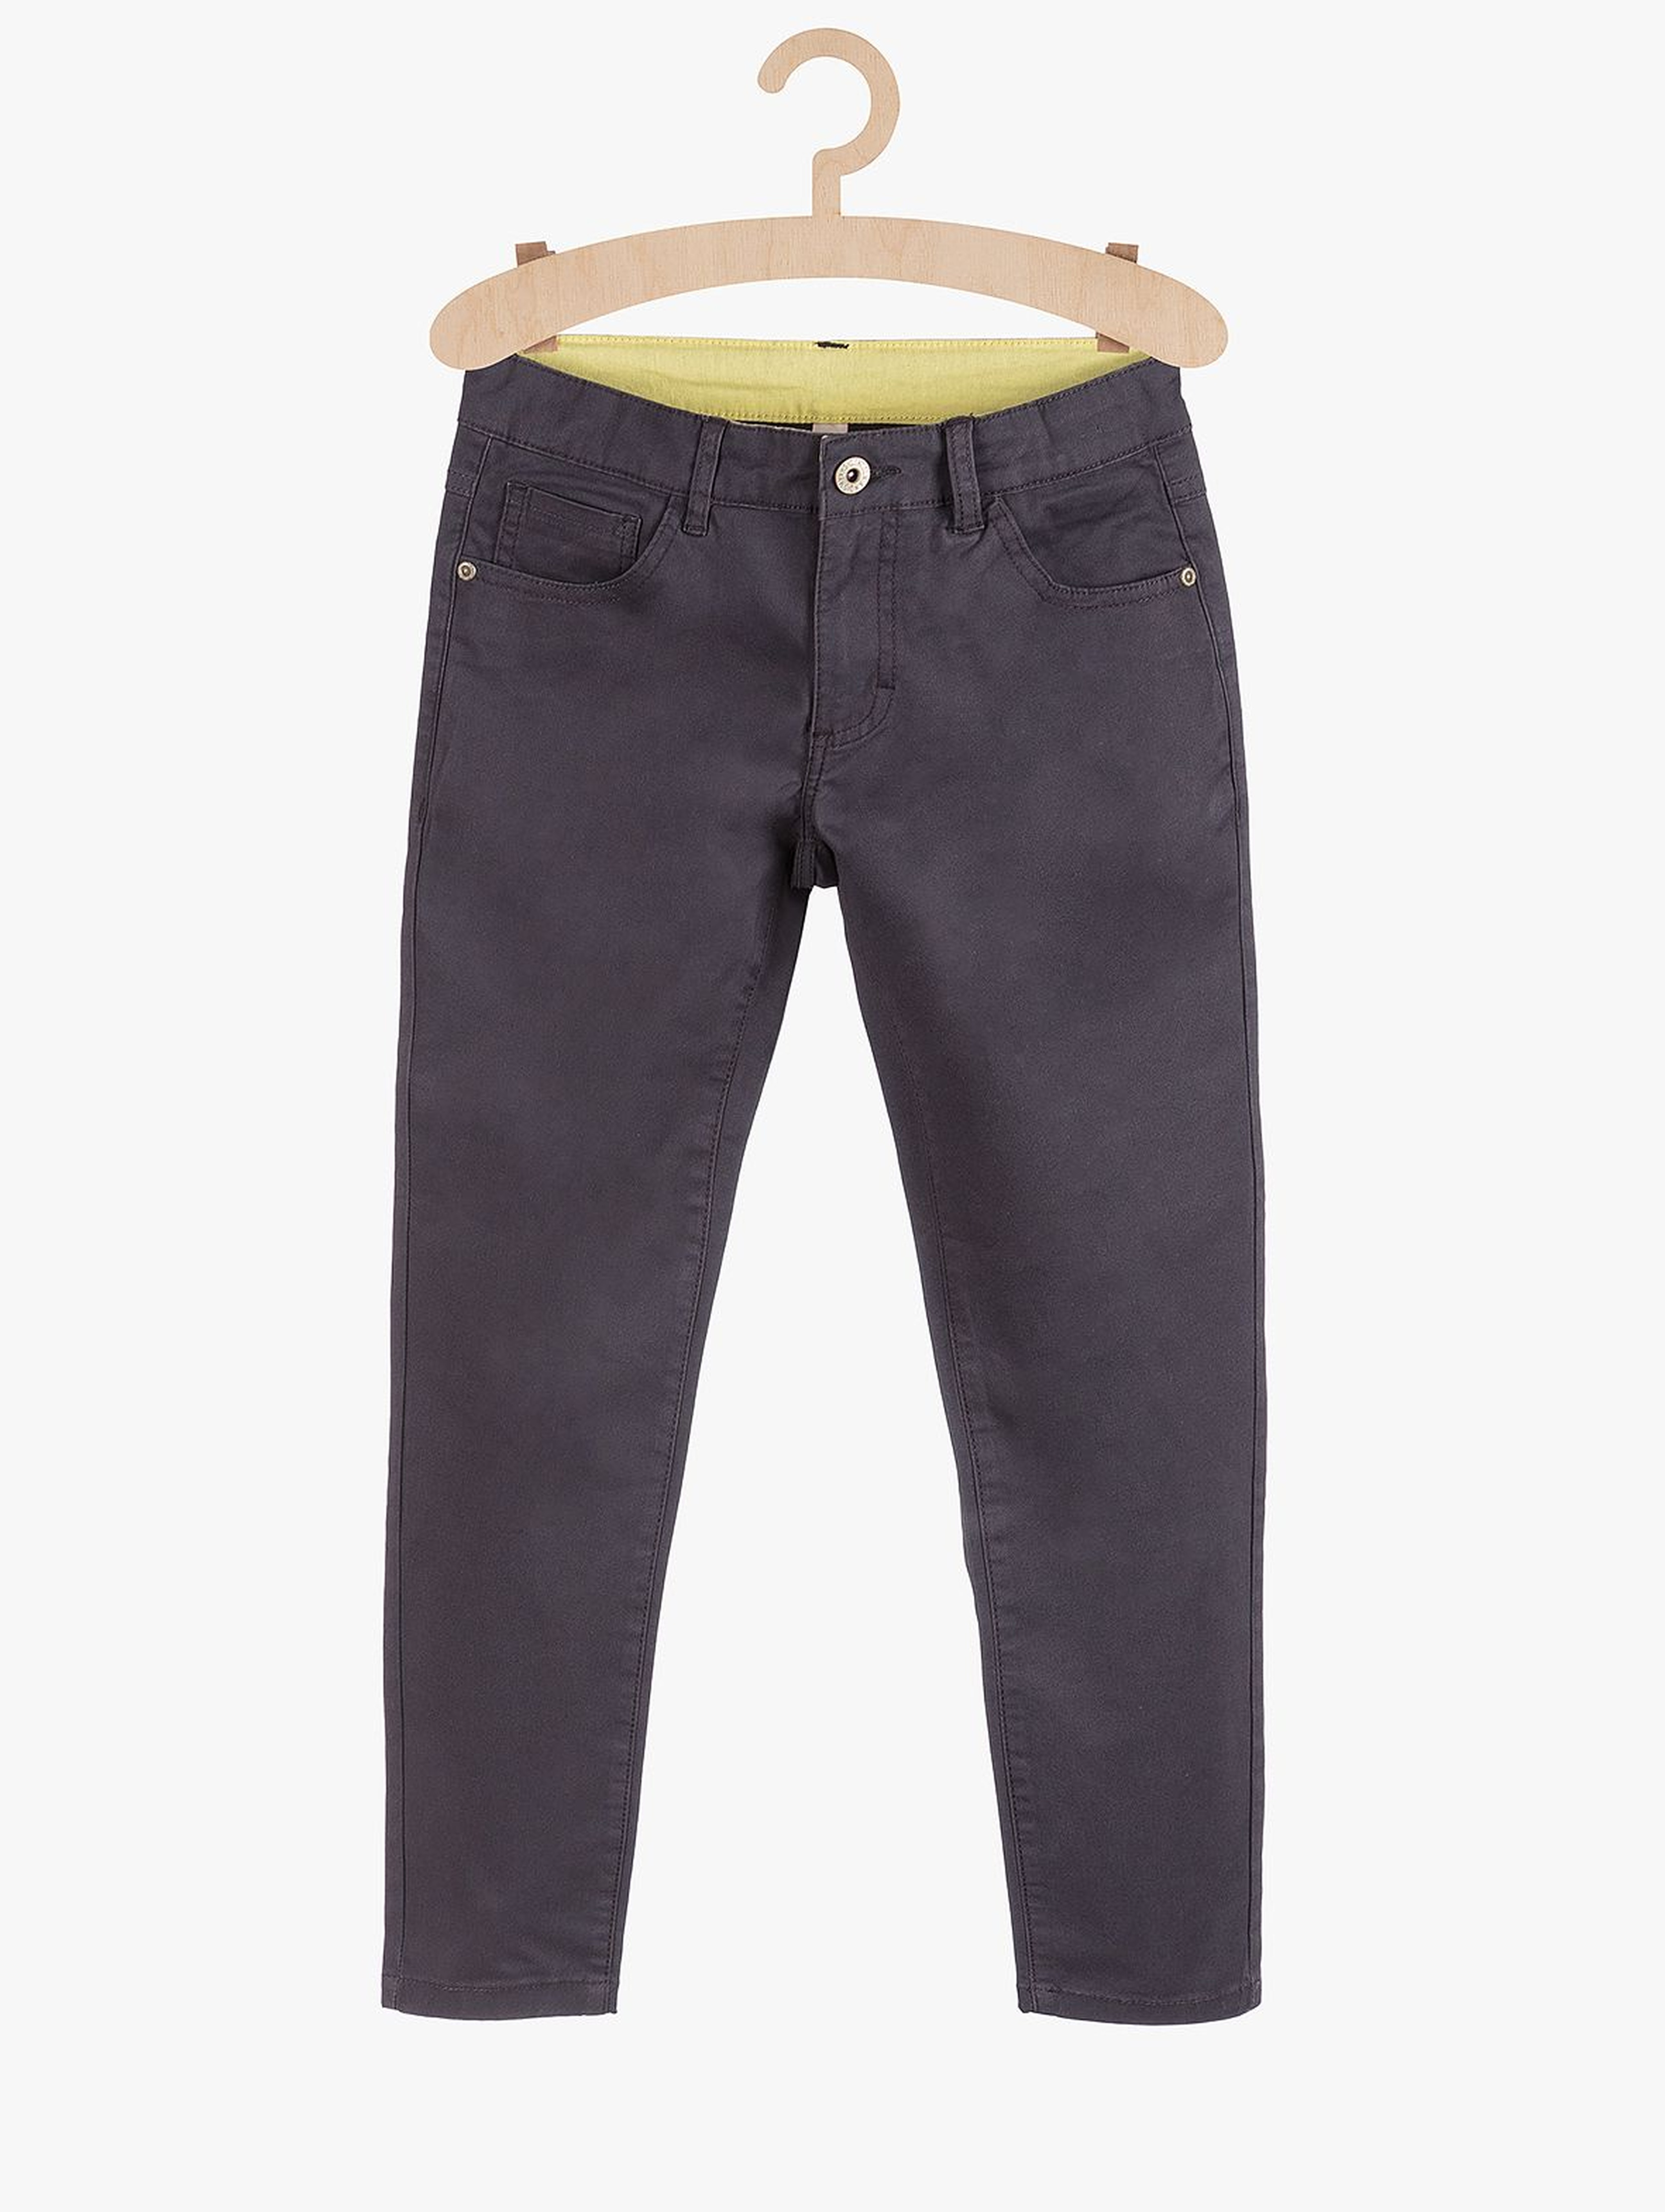 Spodnie dla chłopca- szare z kieszeniami